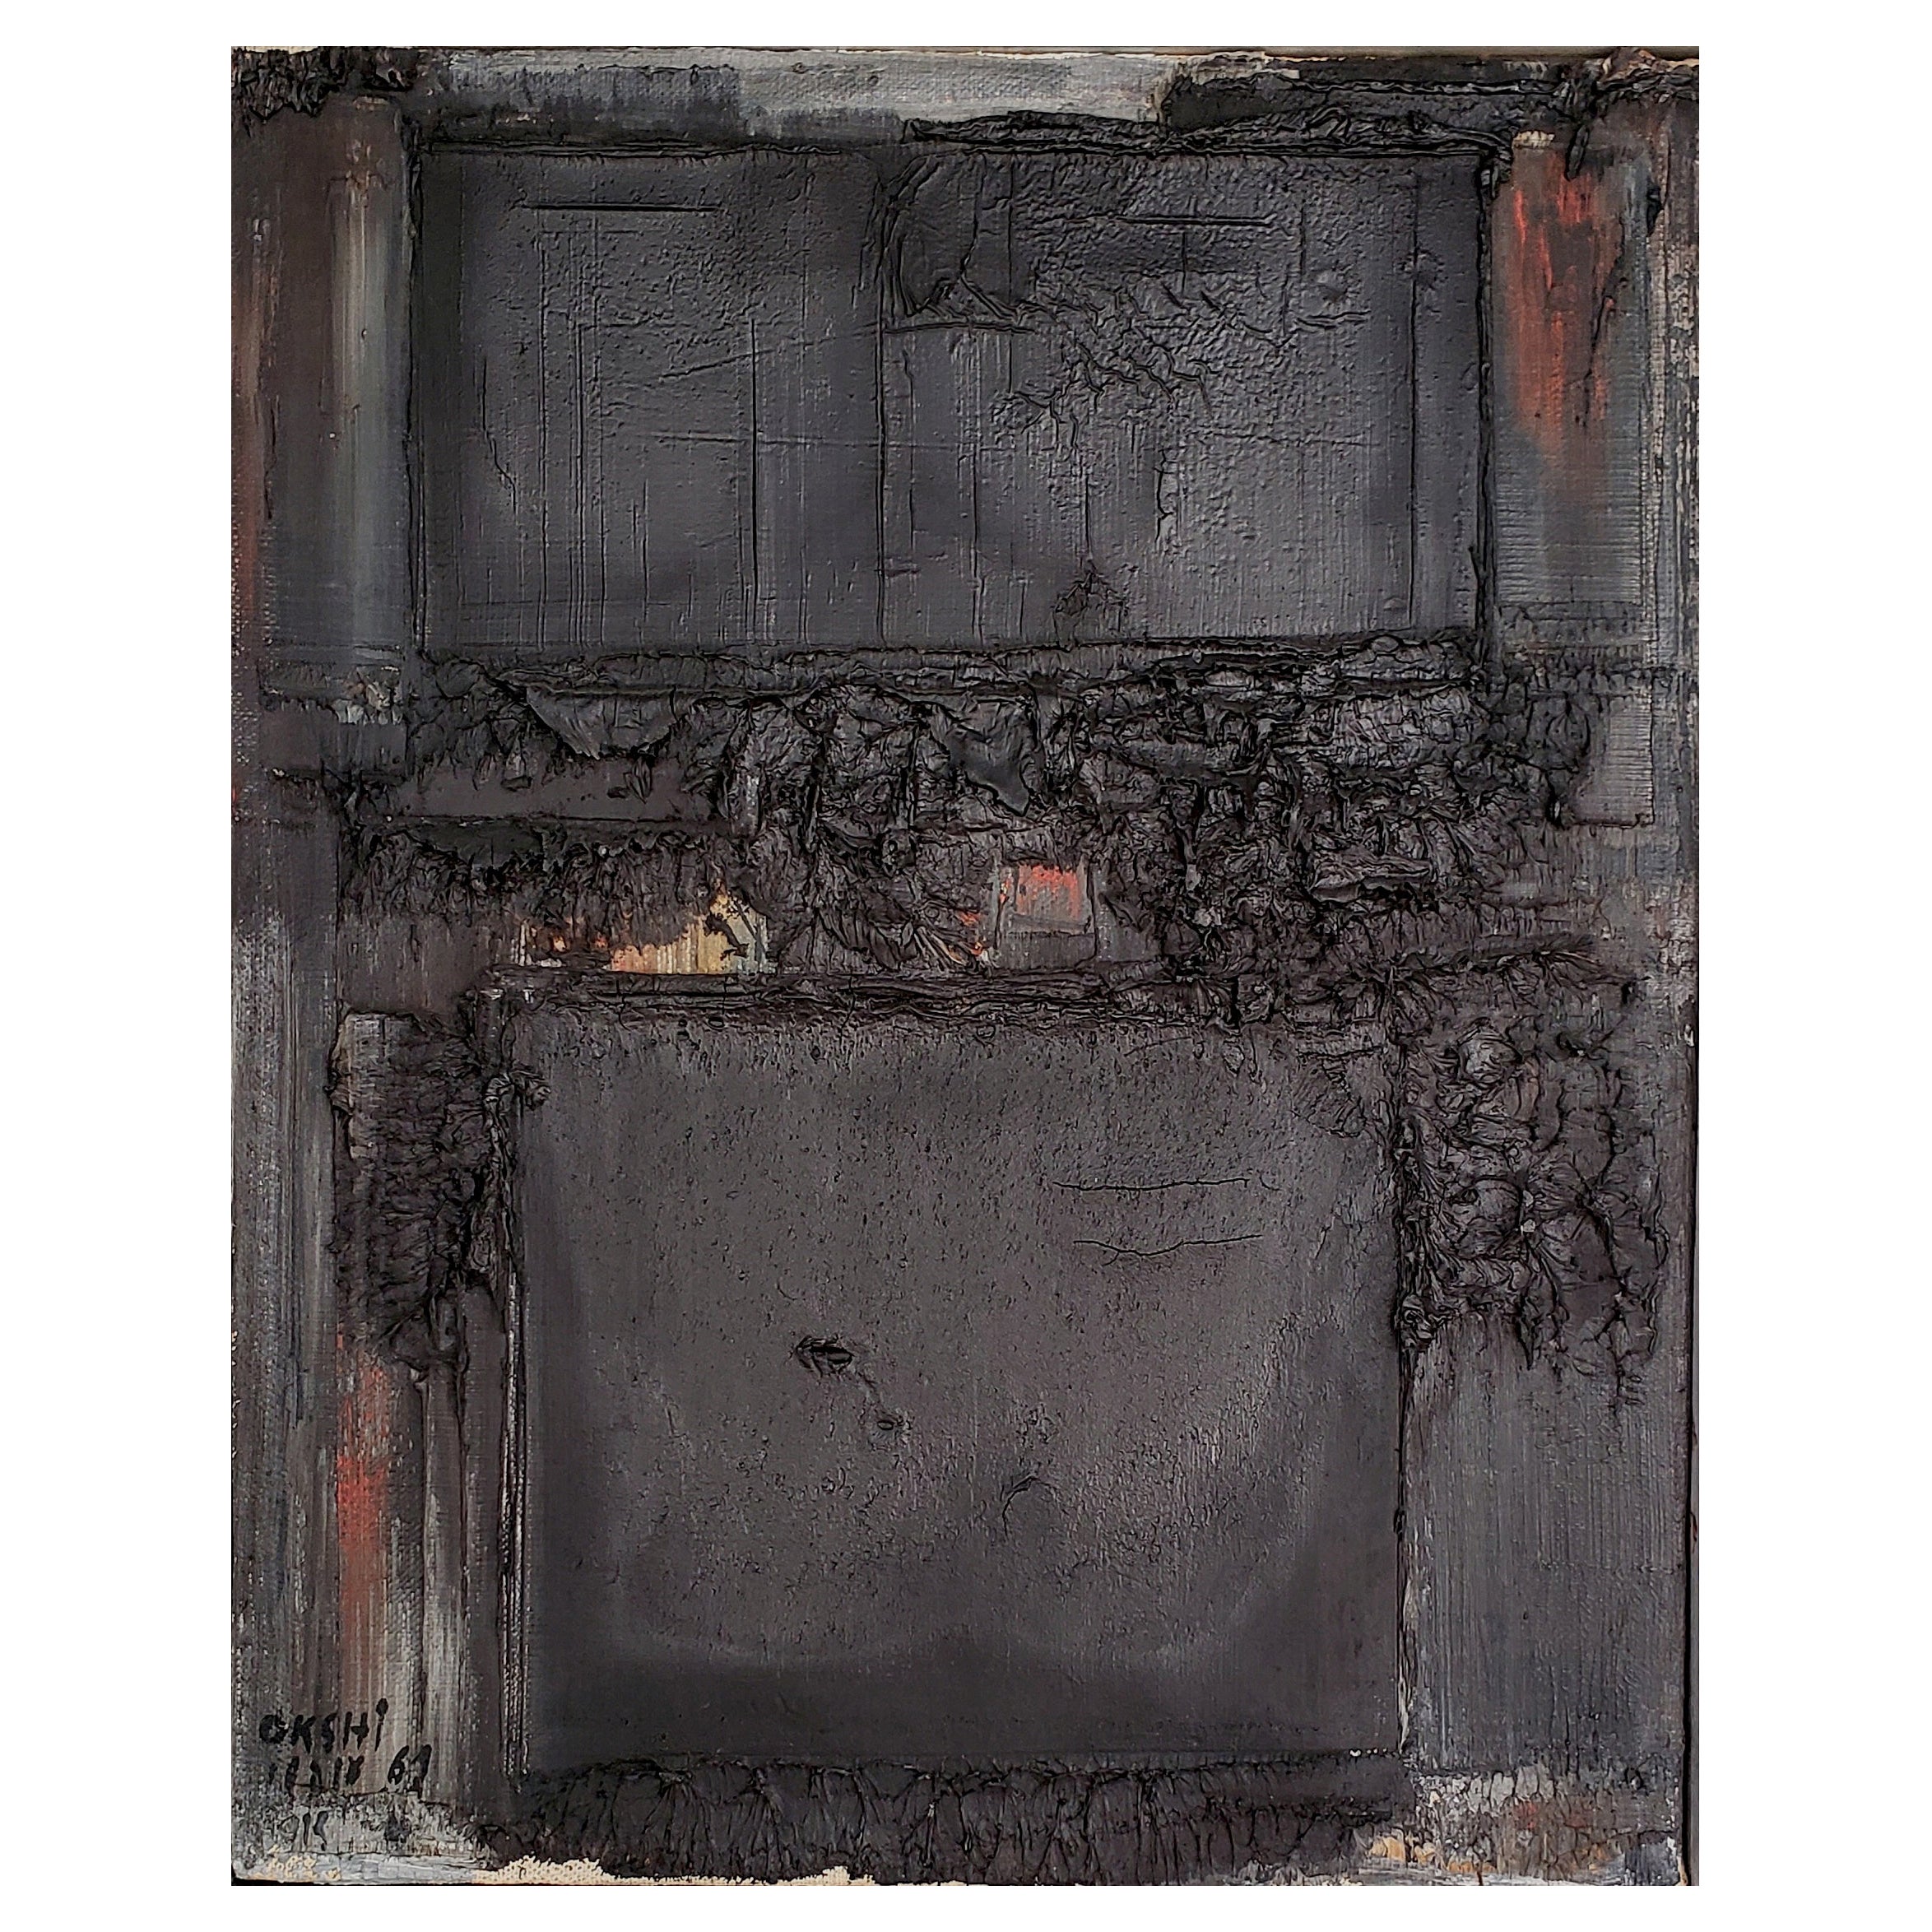 Avshalom Okashi - Composition abstraite huile sur toile, datée de 1961